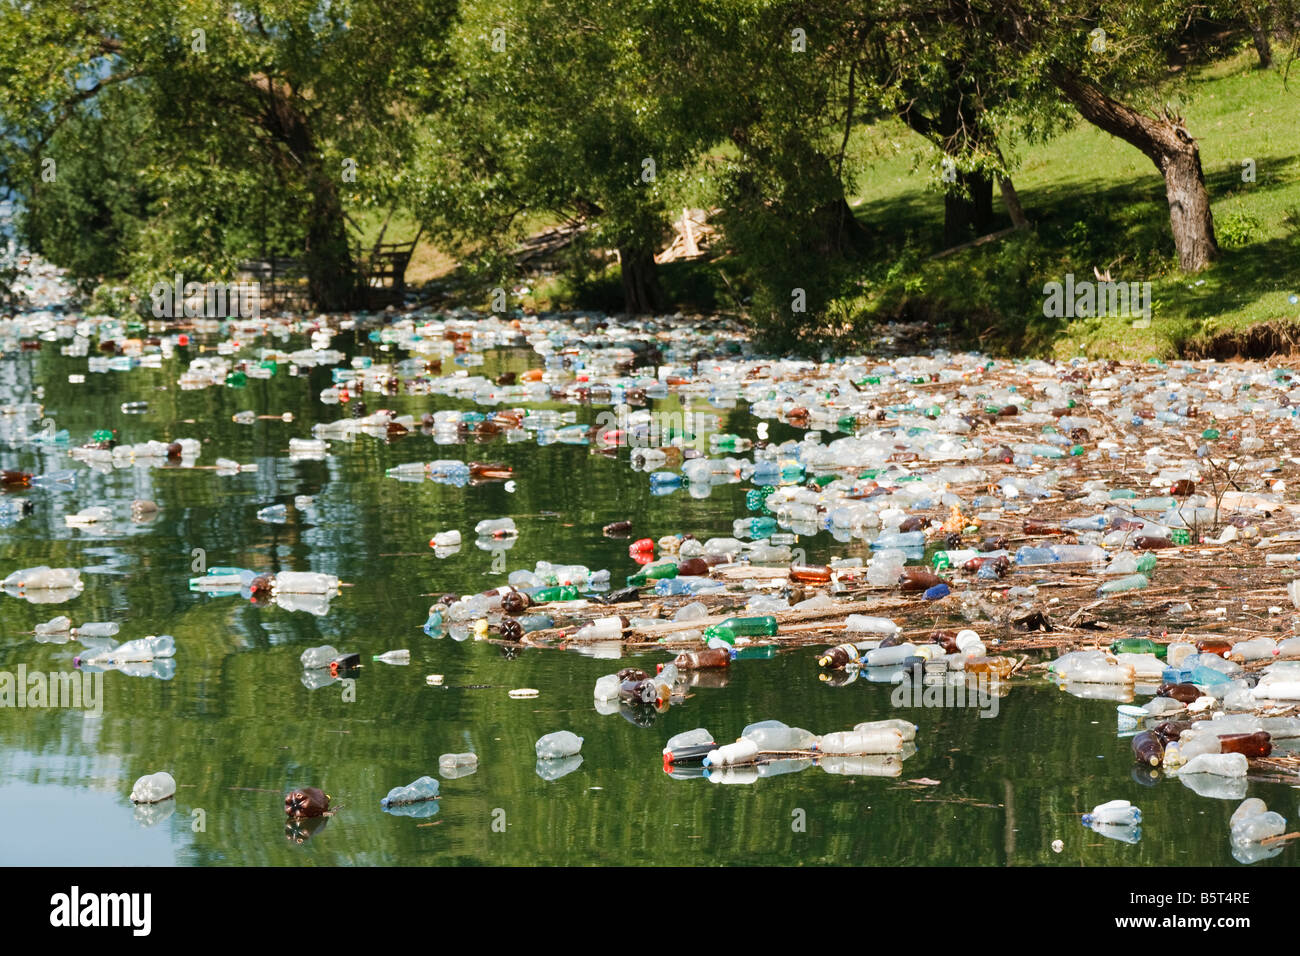 La pollution en plastique lourd dans beau paysage sauvage, le lac bicaz, Roumanie Banque D'Images